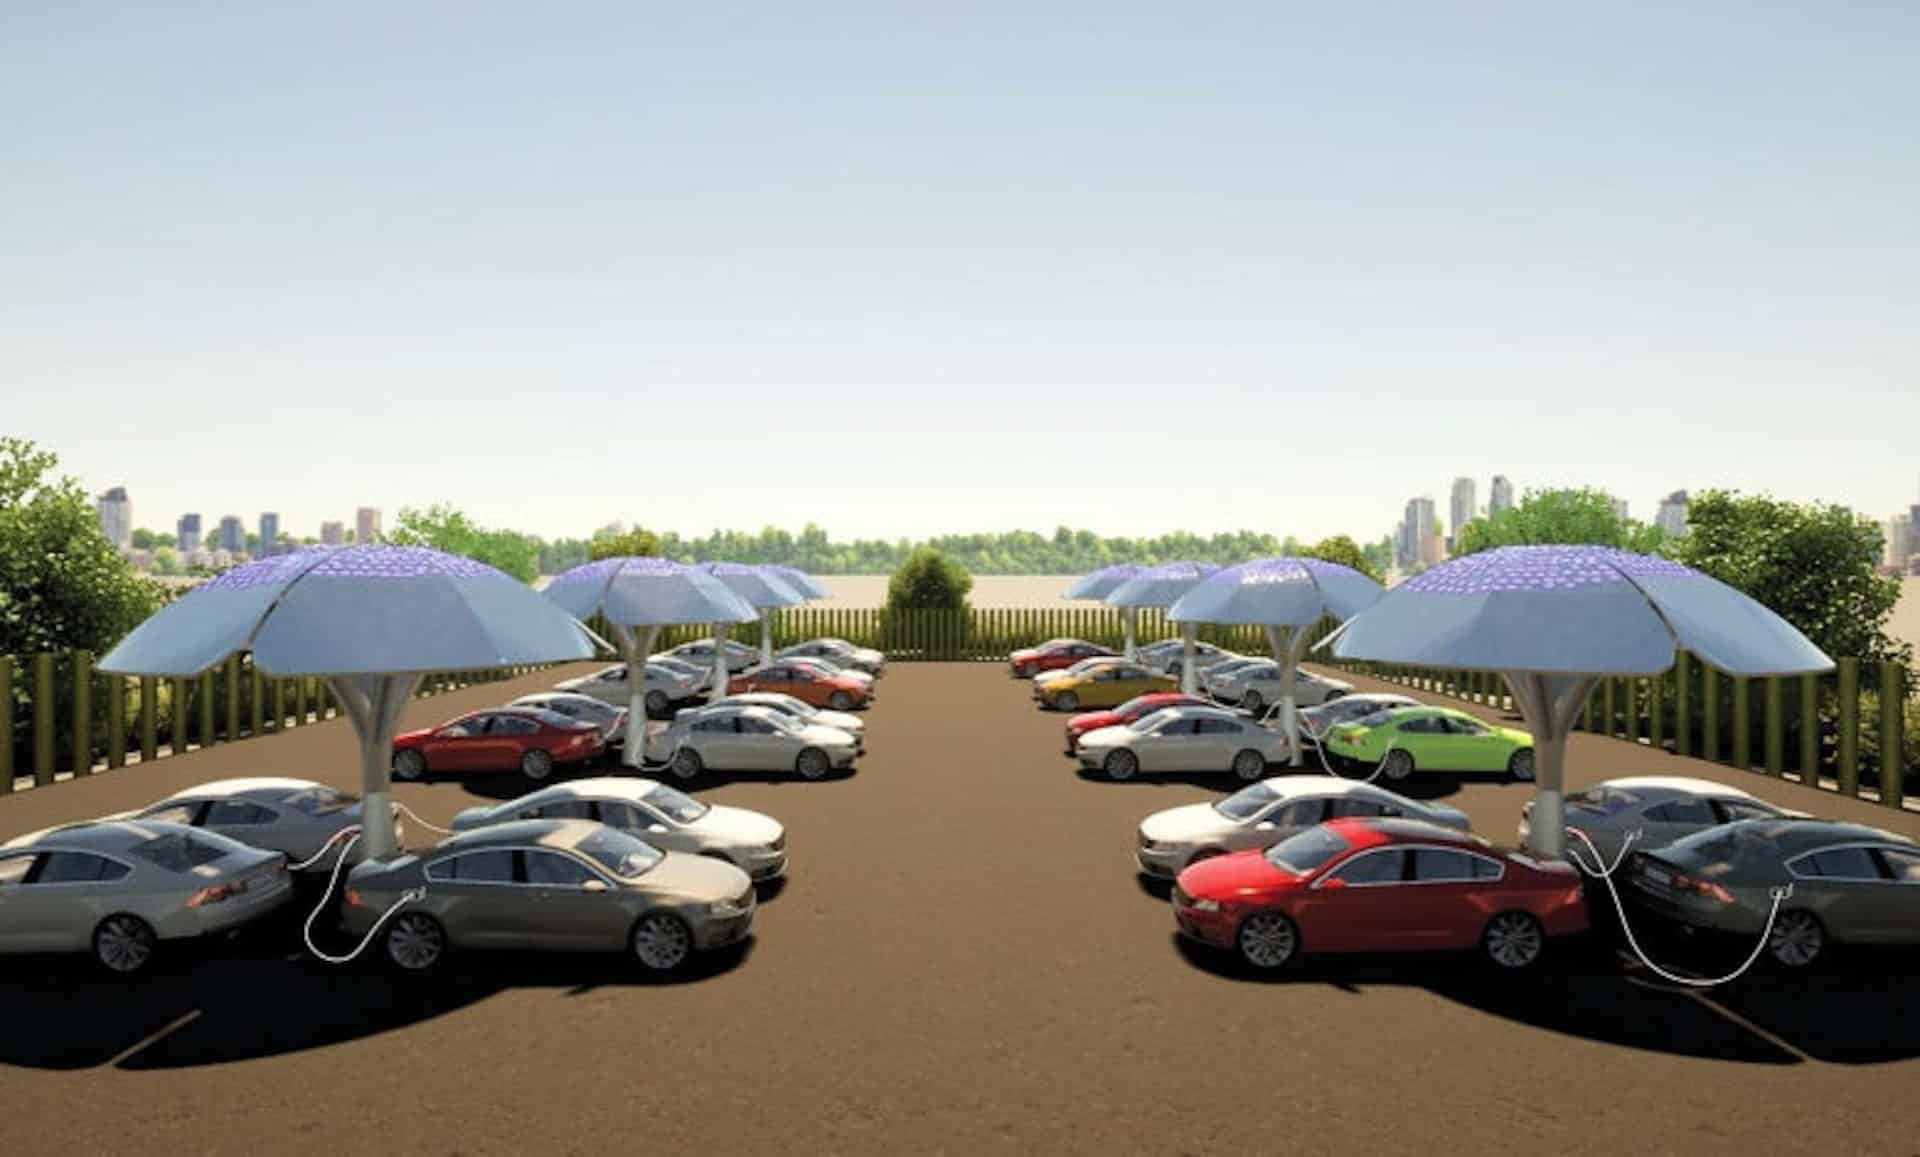 Bientôt des arbres solaires pour recharger les voitures électriques au Royaume-Uni